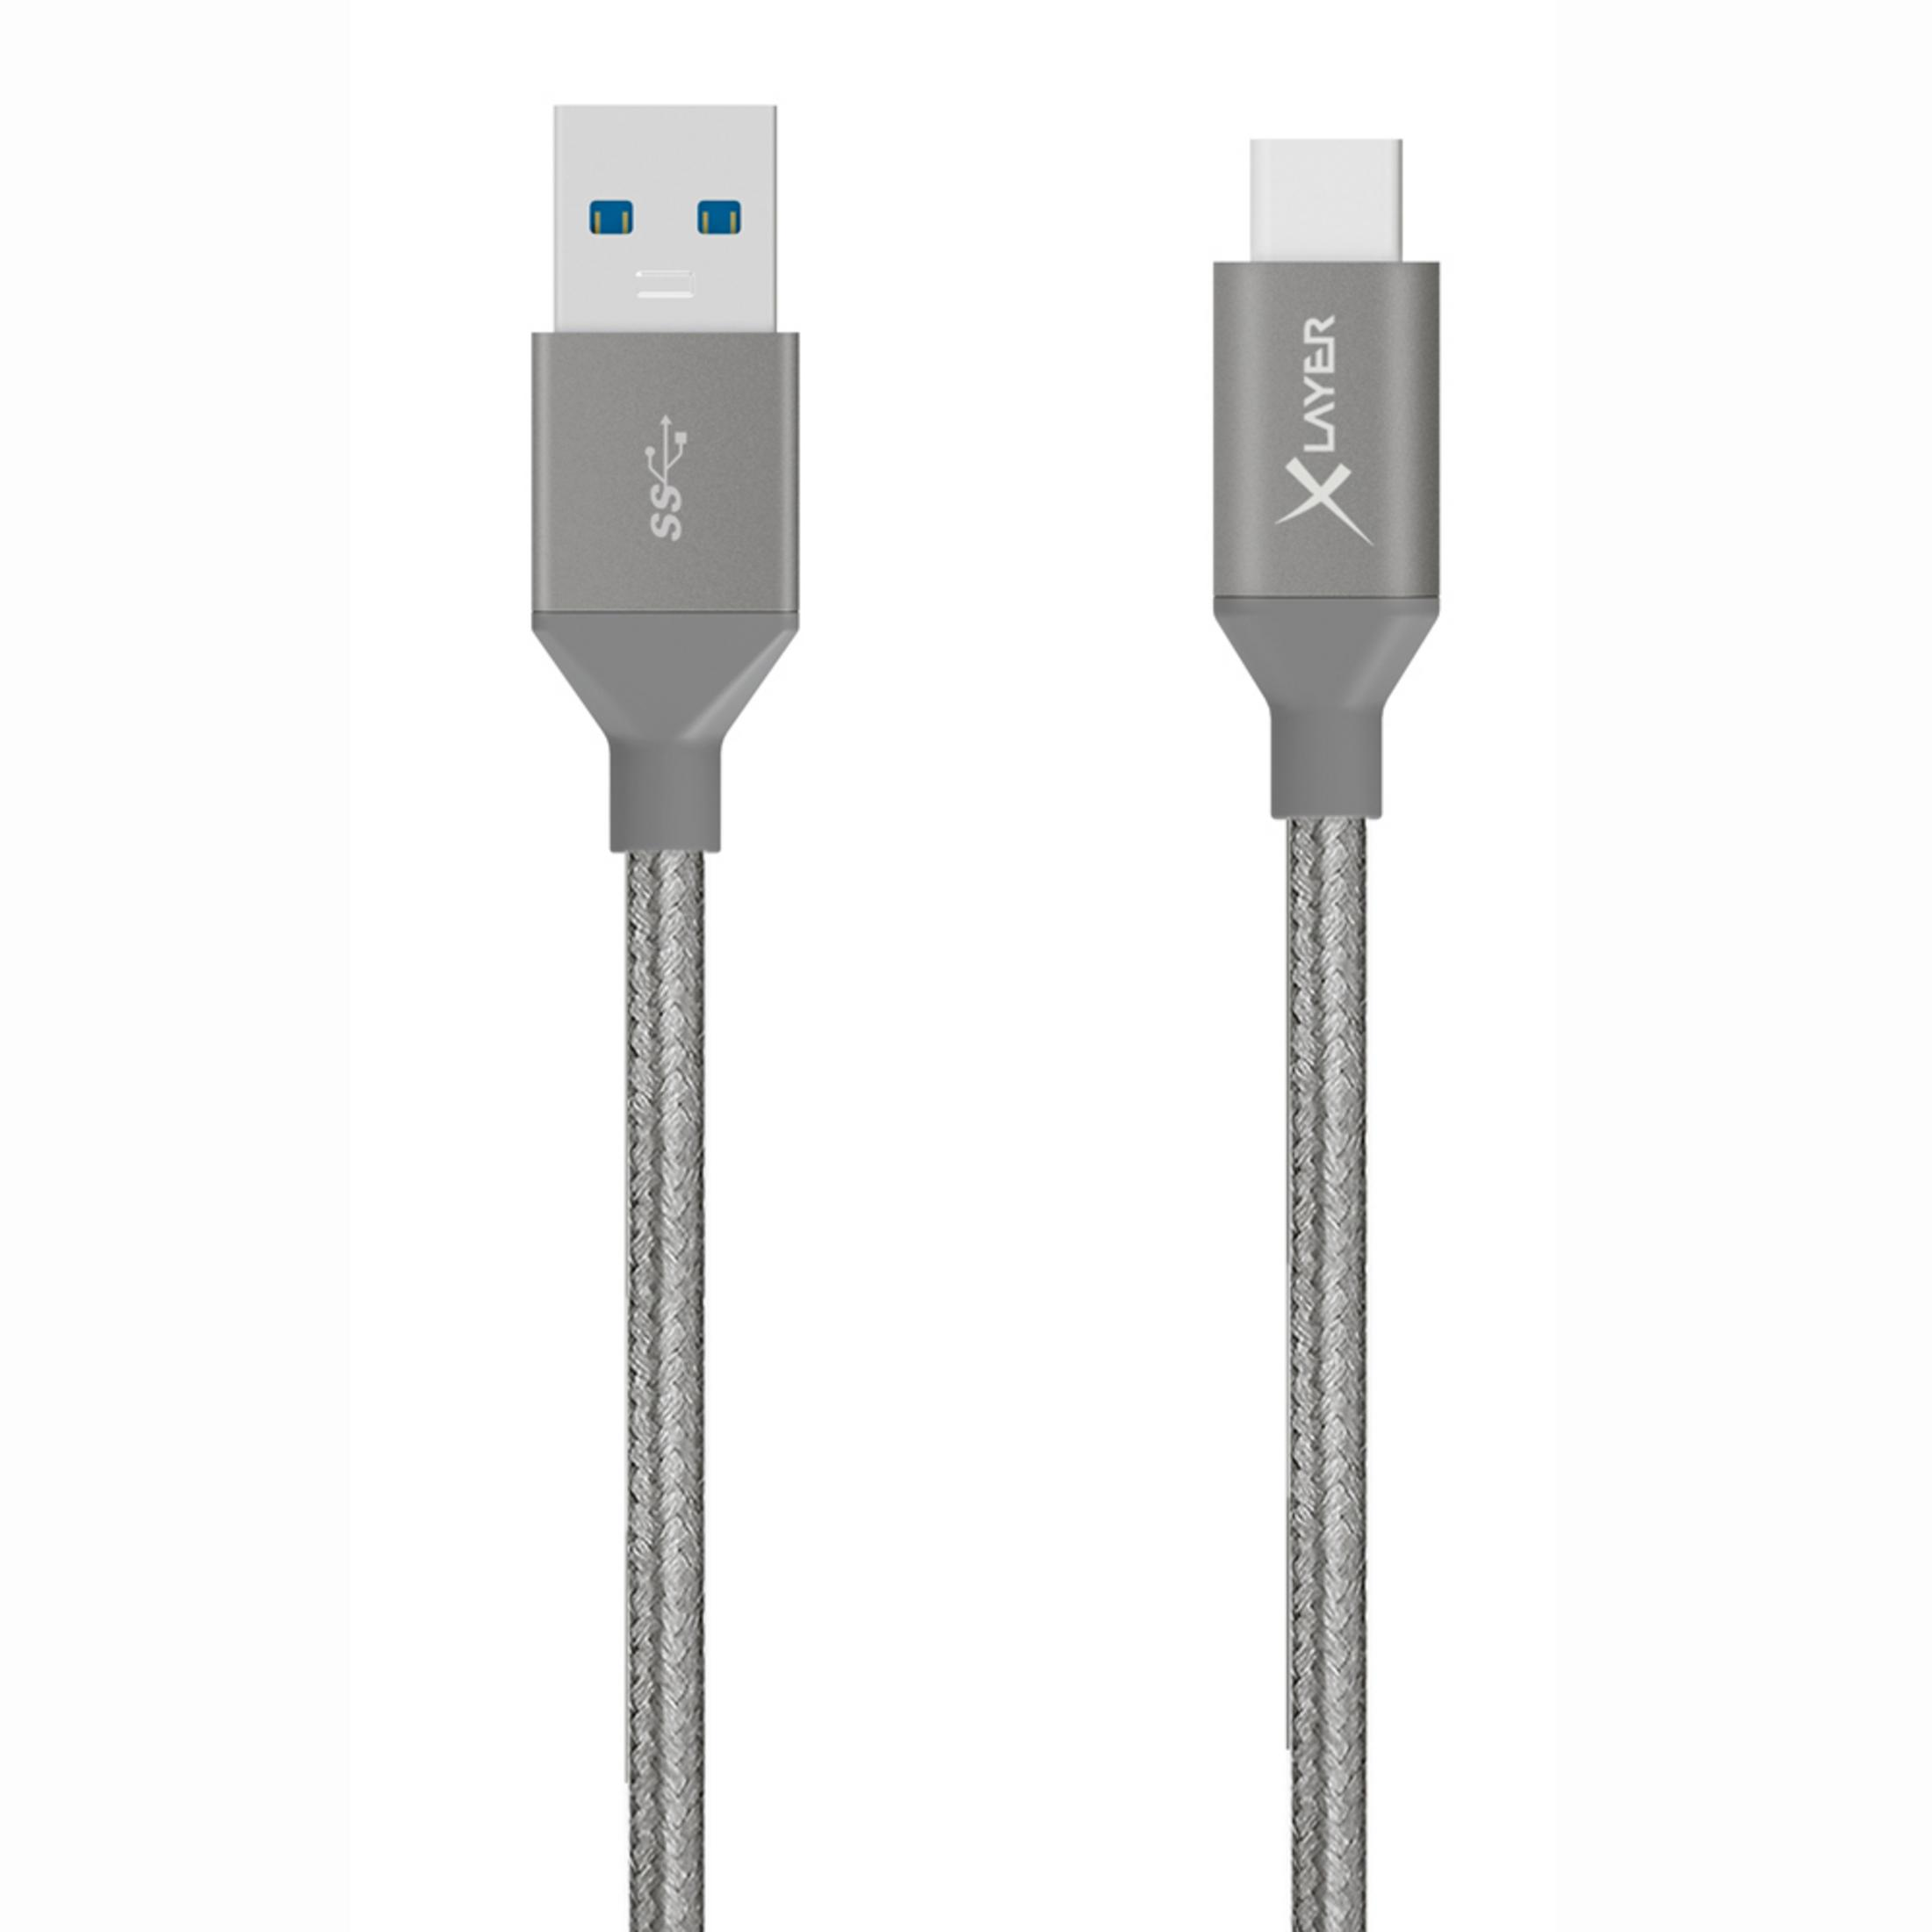 XLAYER USB 3.0 TYPE Ladekabel, TO 1.20M GRAU, 211573 Grau KABEL C m, 1,2